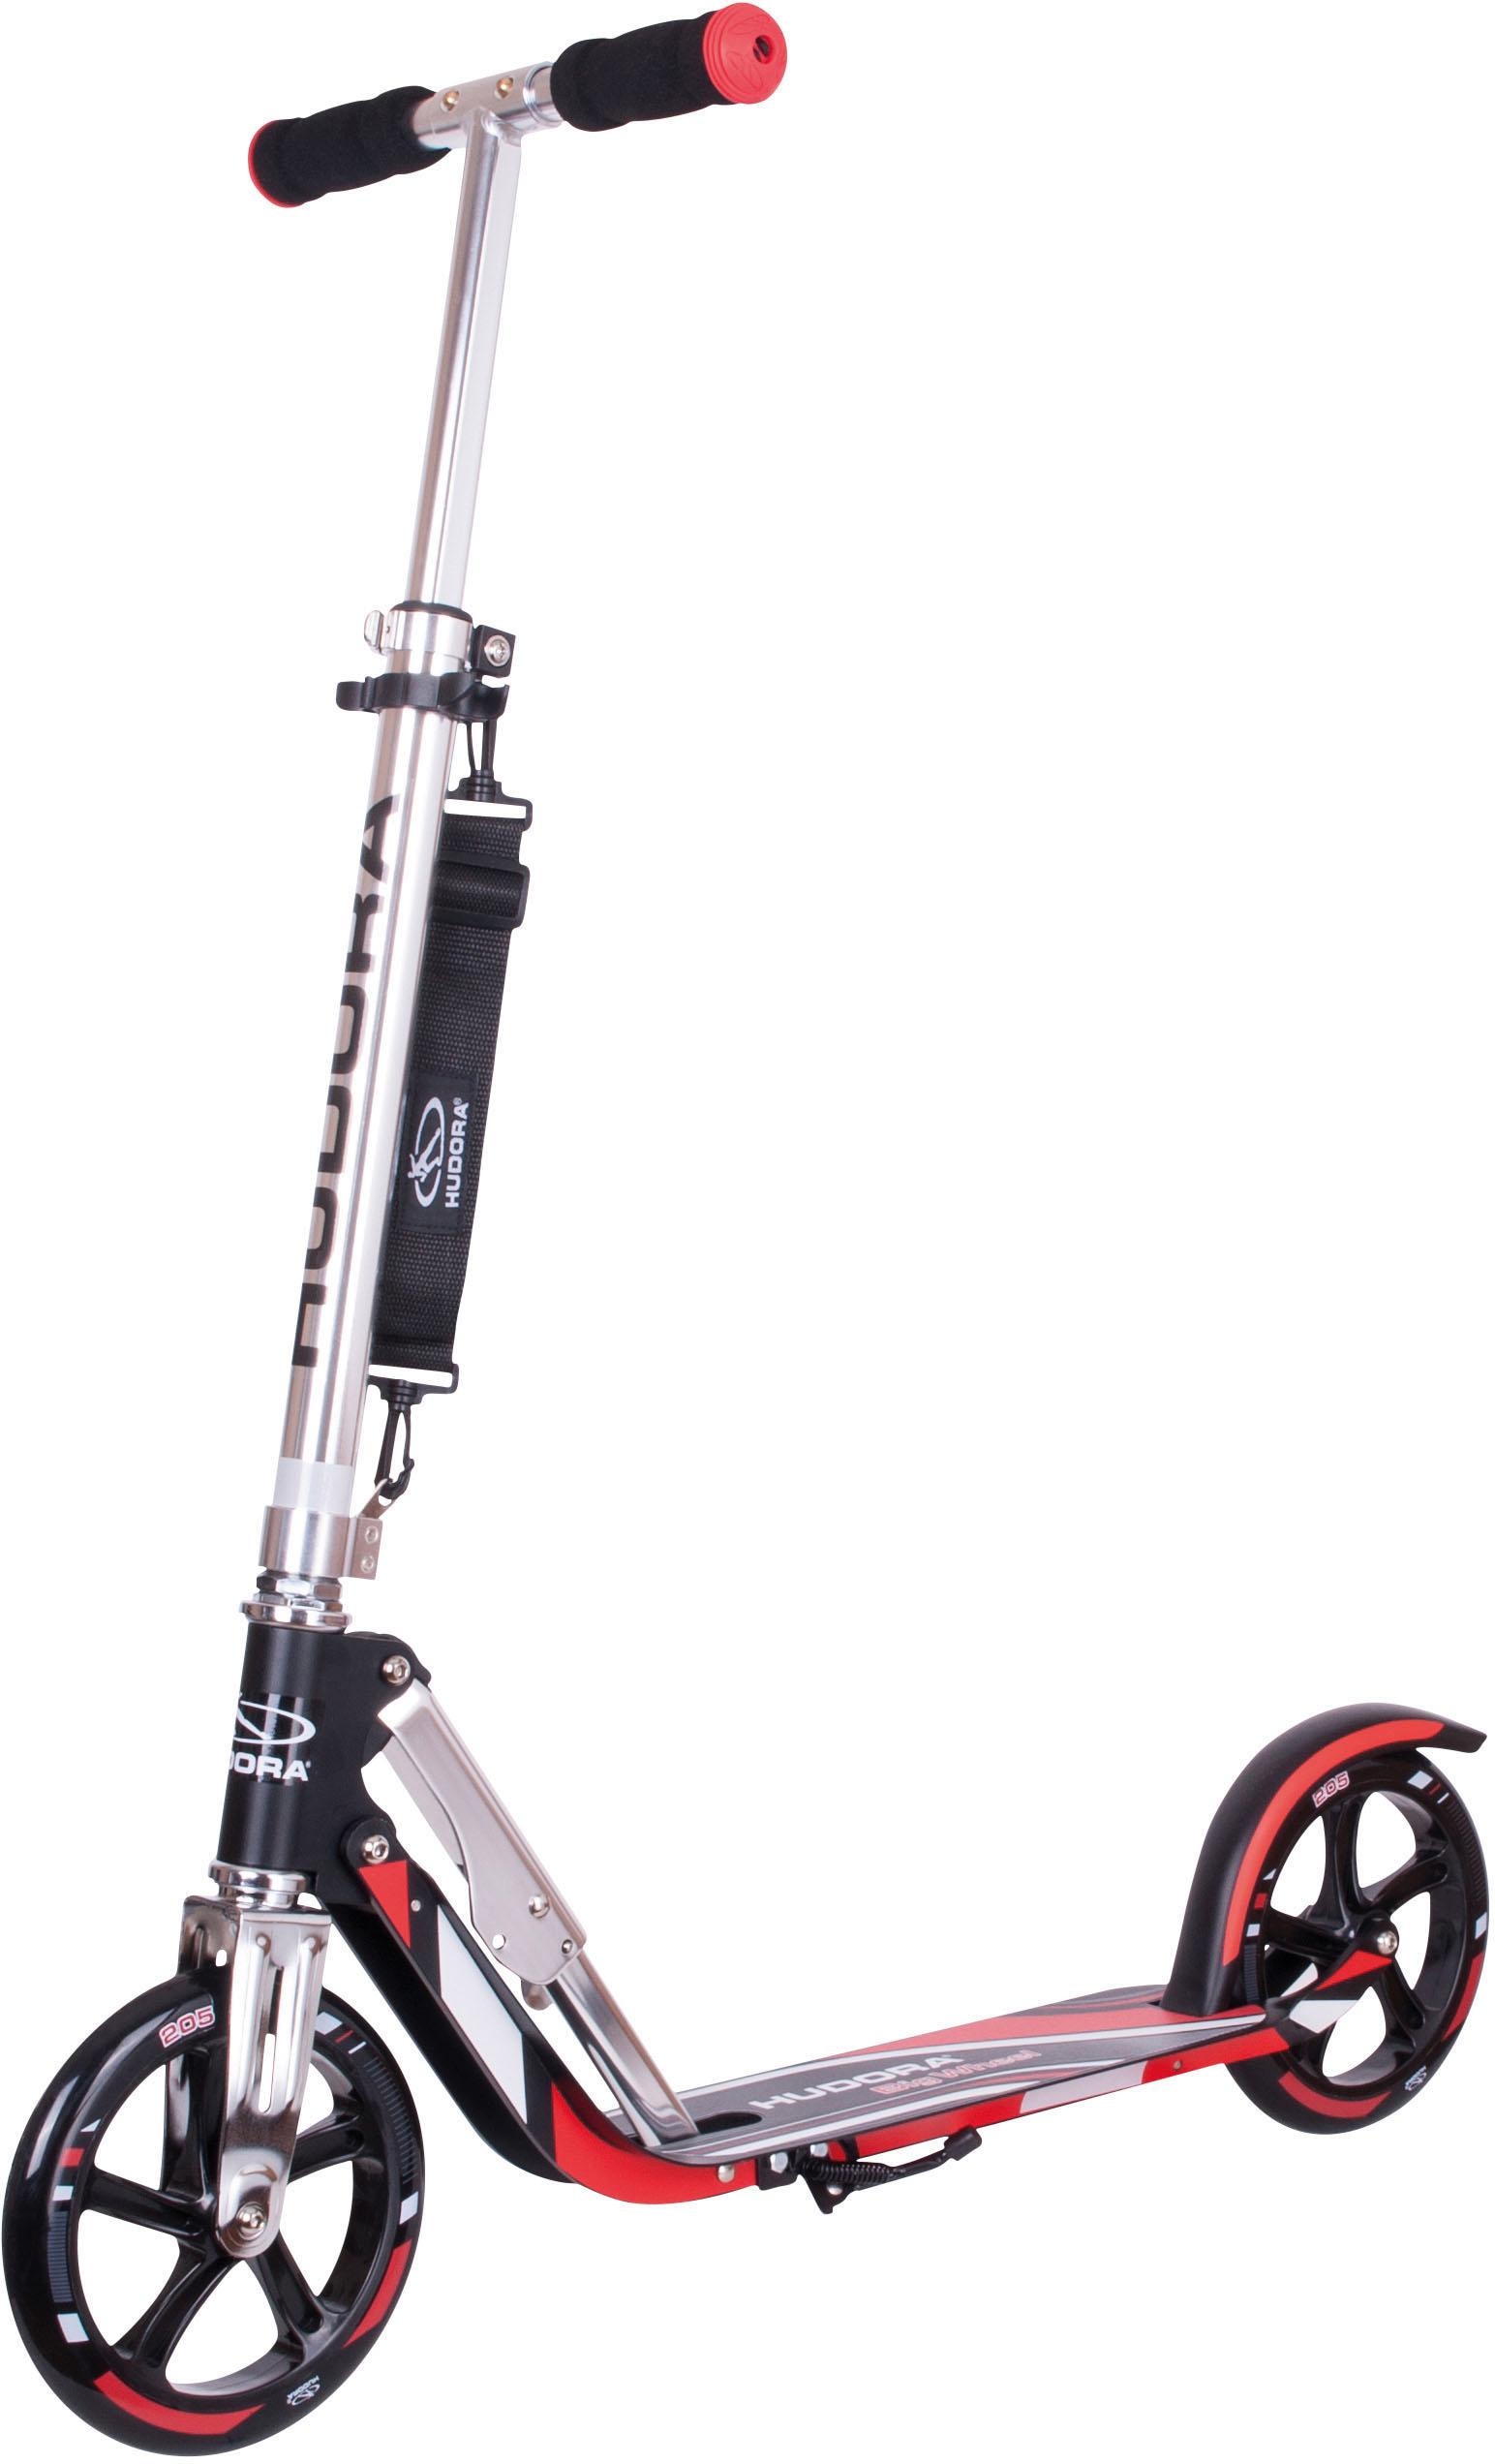 Erwachsene Roller Kinder Roller Scooter Faltbar Einstellbar 120 kg